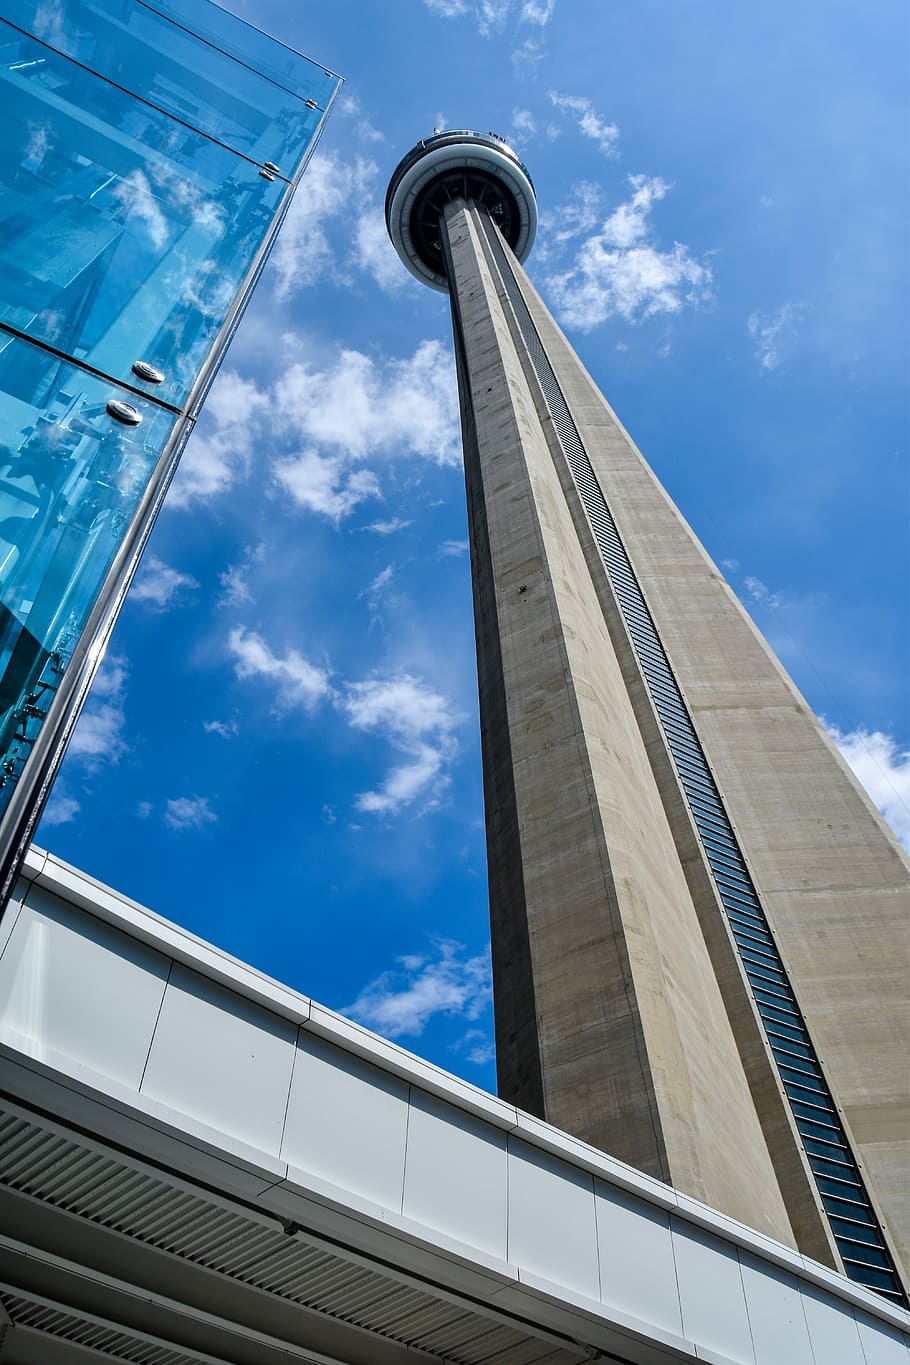 Toronto, Cn Tower, Arquitetura, Canadá, cidades, locais de interesse, torre, atração, turistas, construção